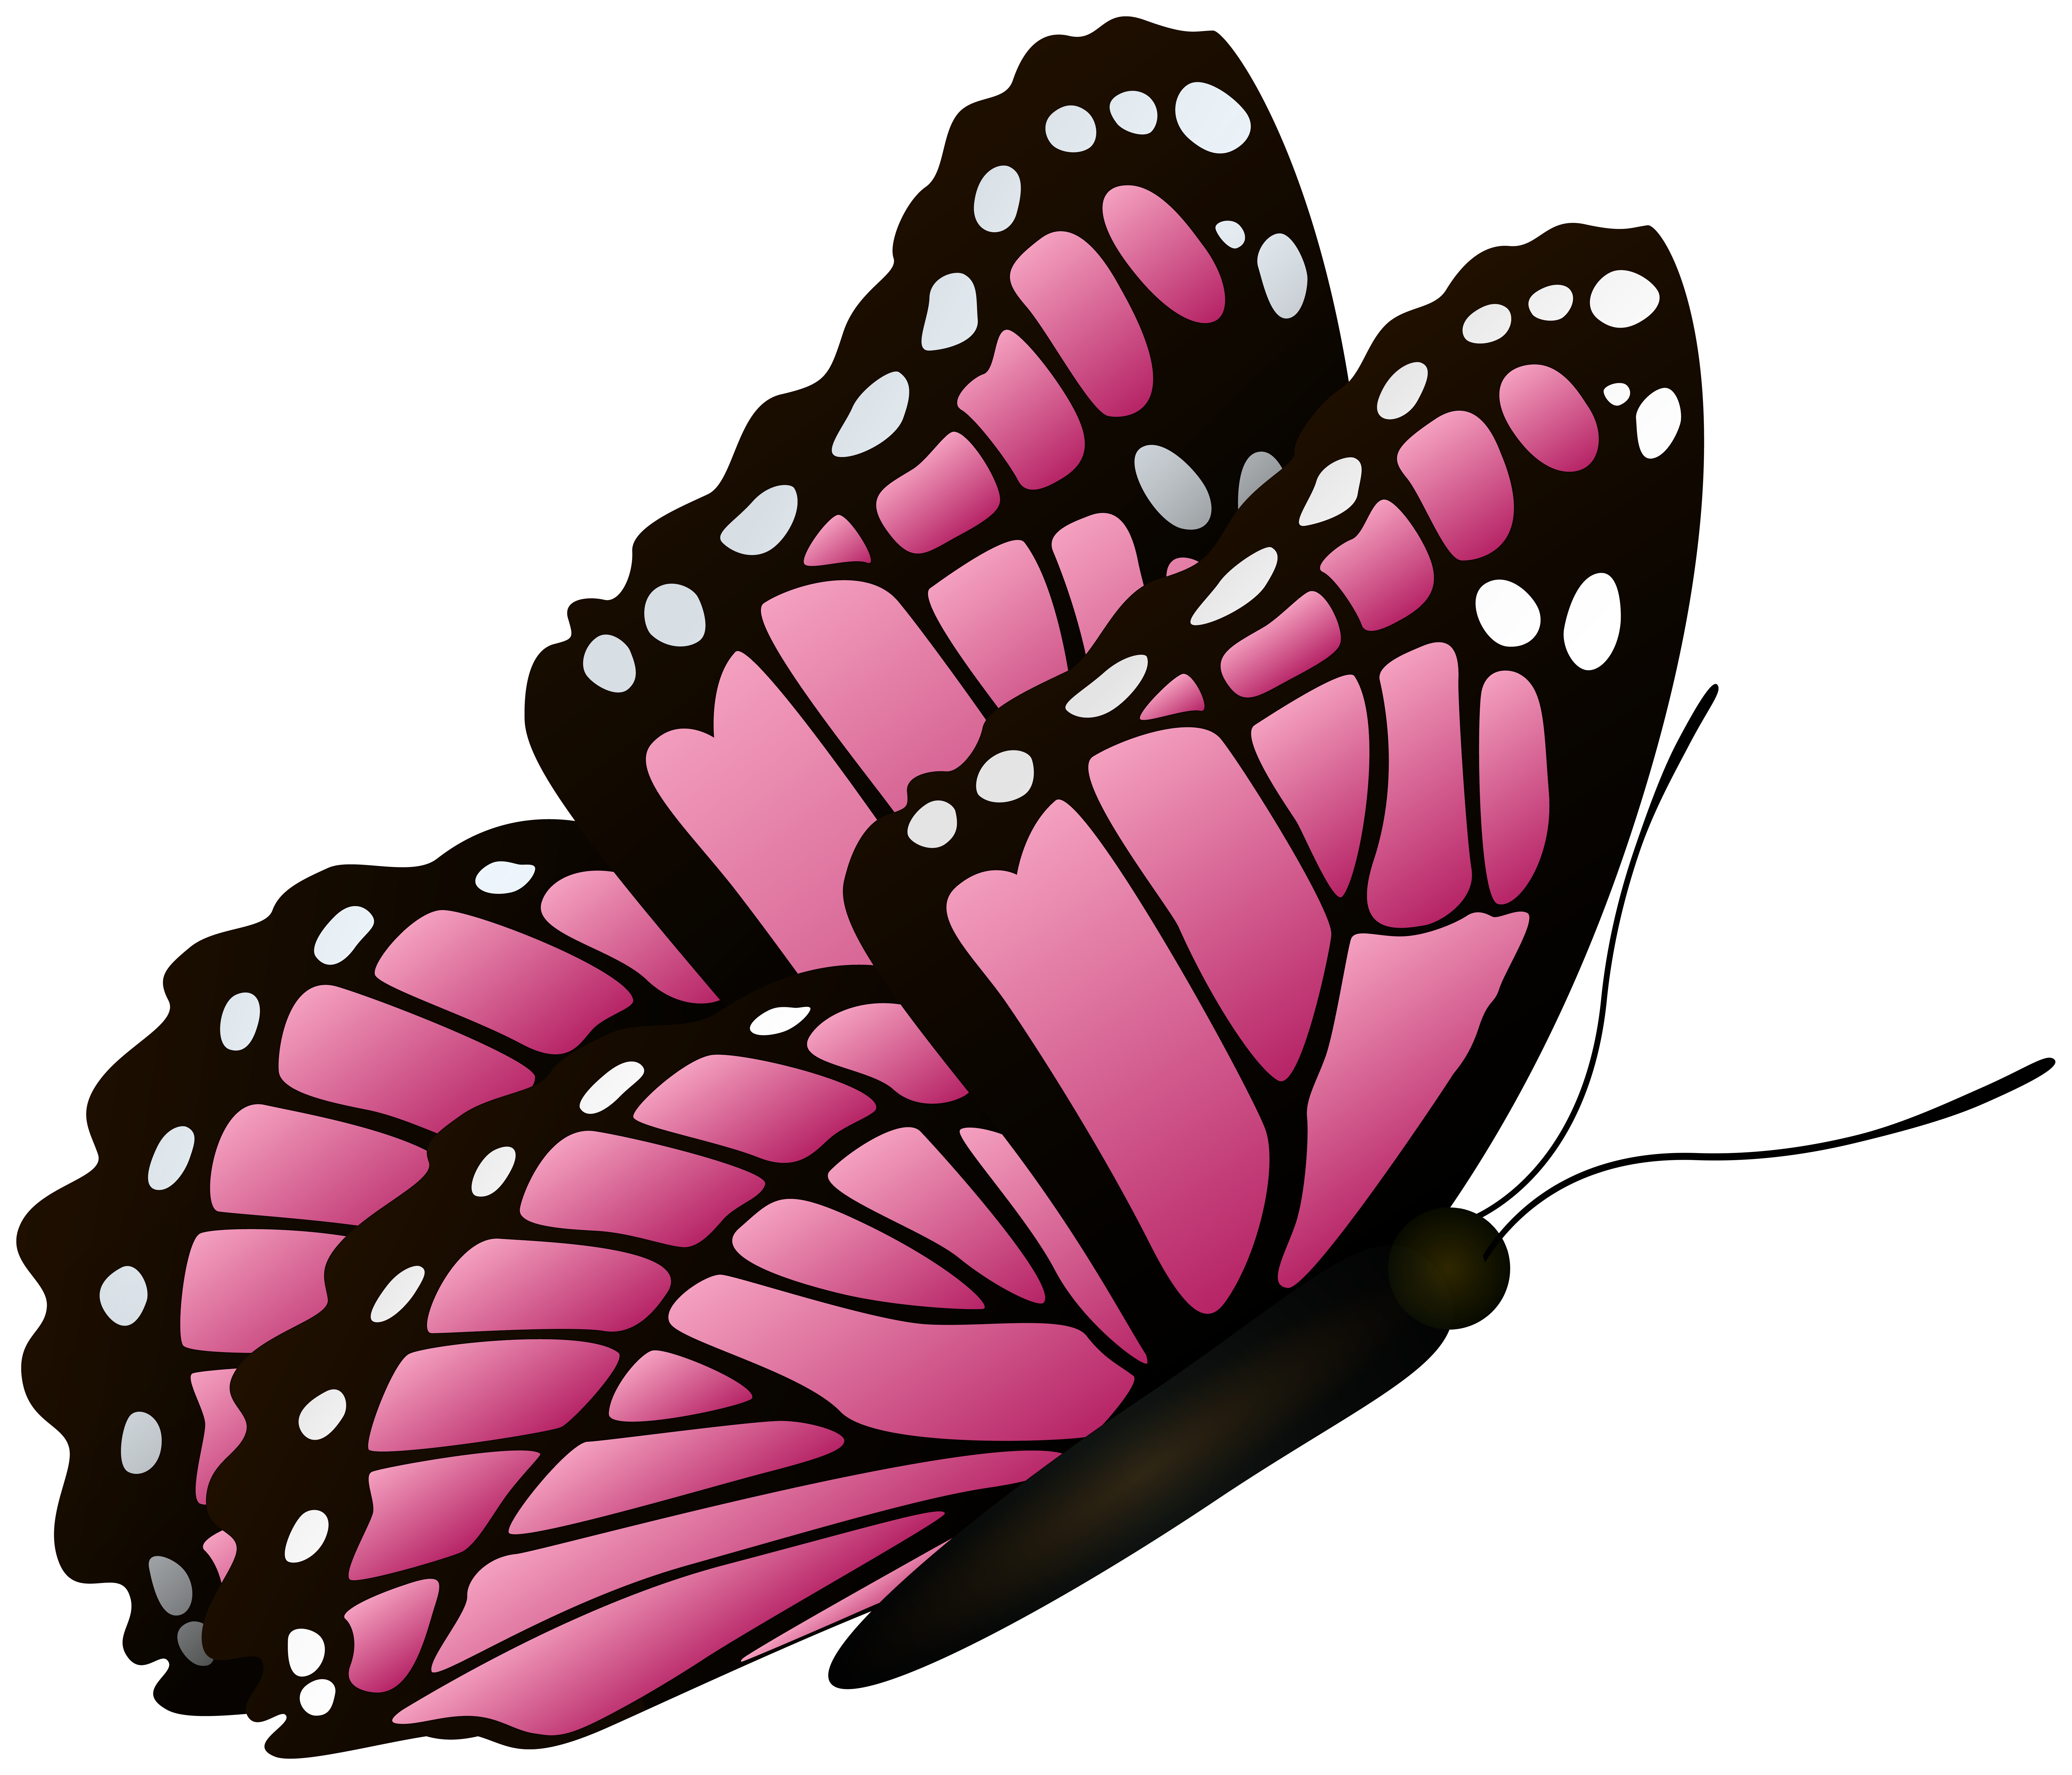 Con bướm là biểu tượng của sự tự do và sự đổi mới trong cuộc sống. Bức ảnh clipart với những con bướm vô cùng sống động và bay lượn trong không trung sẽ kích thích trí tưởng tượng của bạn đến một thế giới hoàn toàn mới mẻ. Hãy xem nó ngay bây giờ bằng cách nhấn vào hình ảnh.